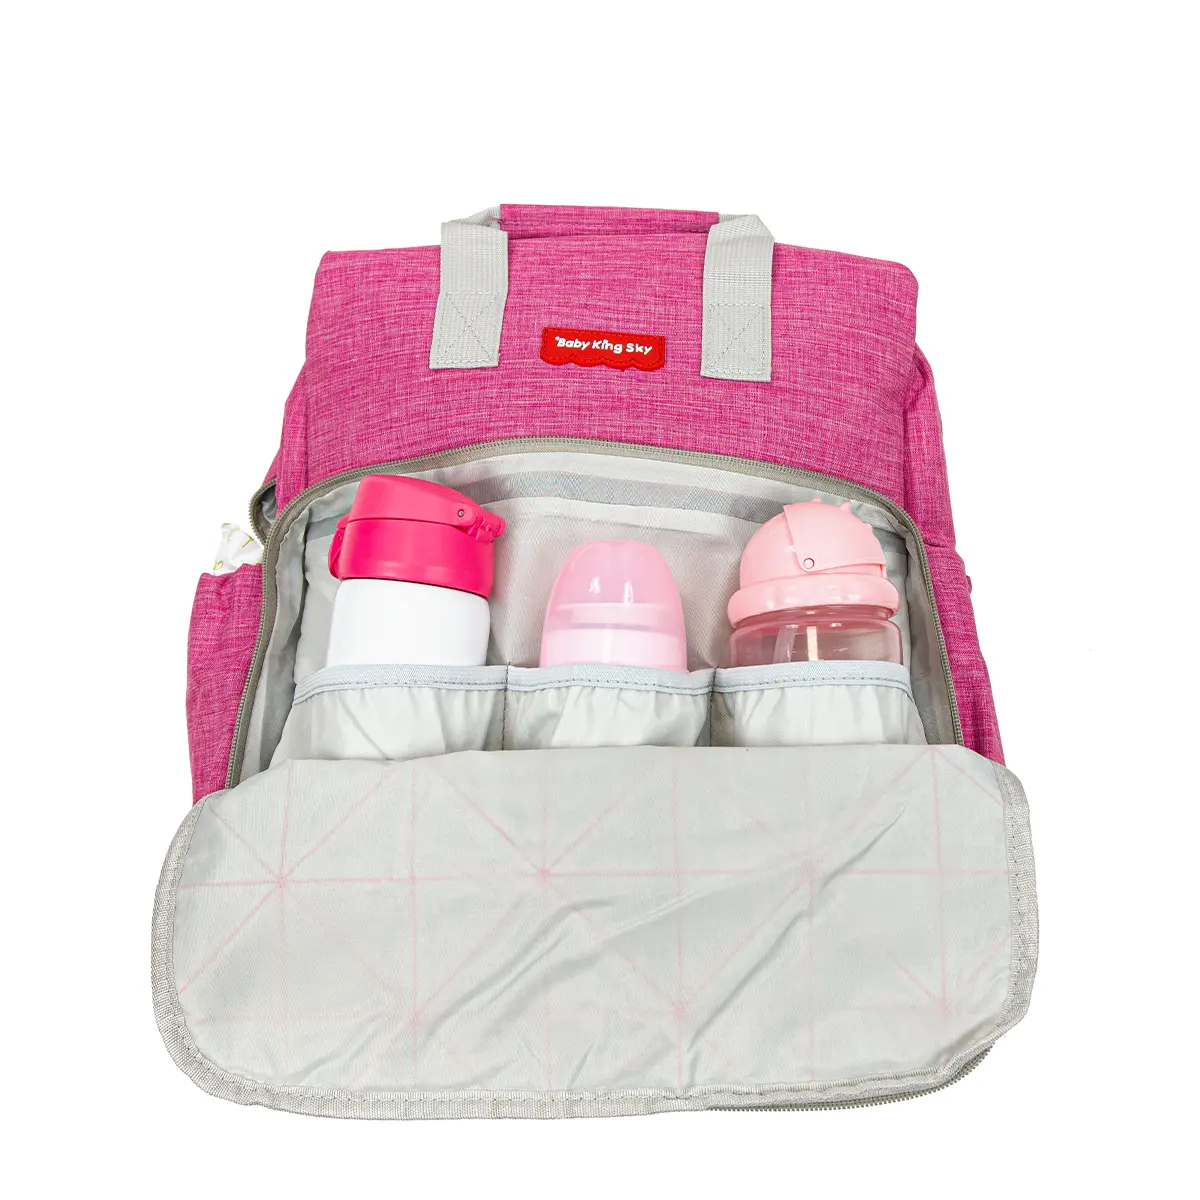 Pelenkázó hátizsák, hátitáska rózsaszín színben (ST-MB-608-PINK) pelenkázótáska